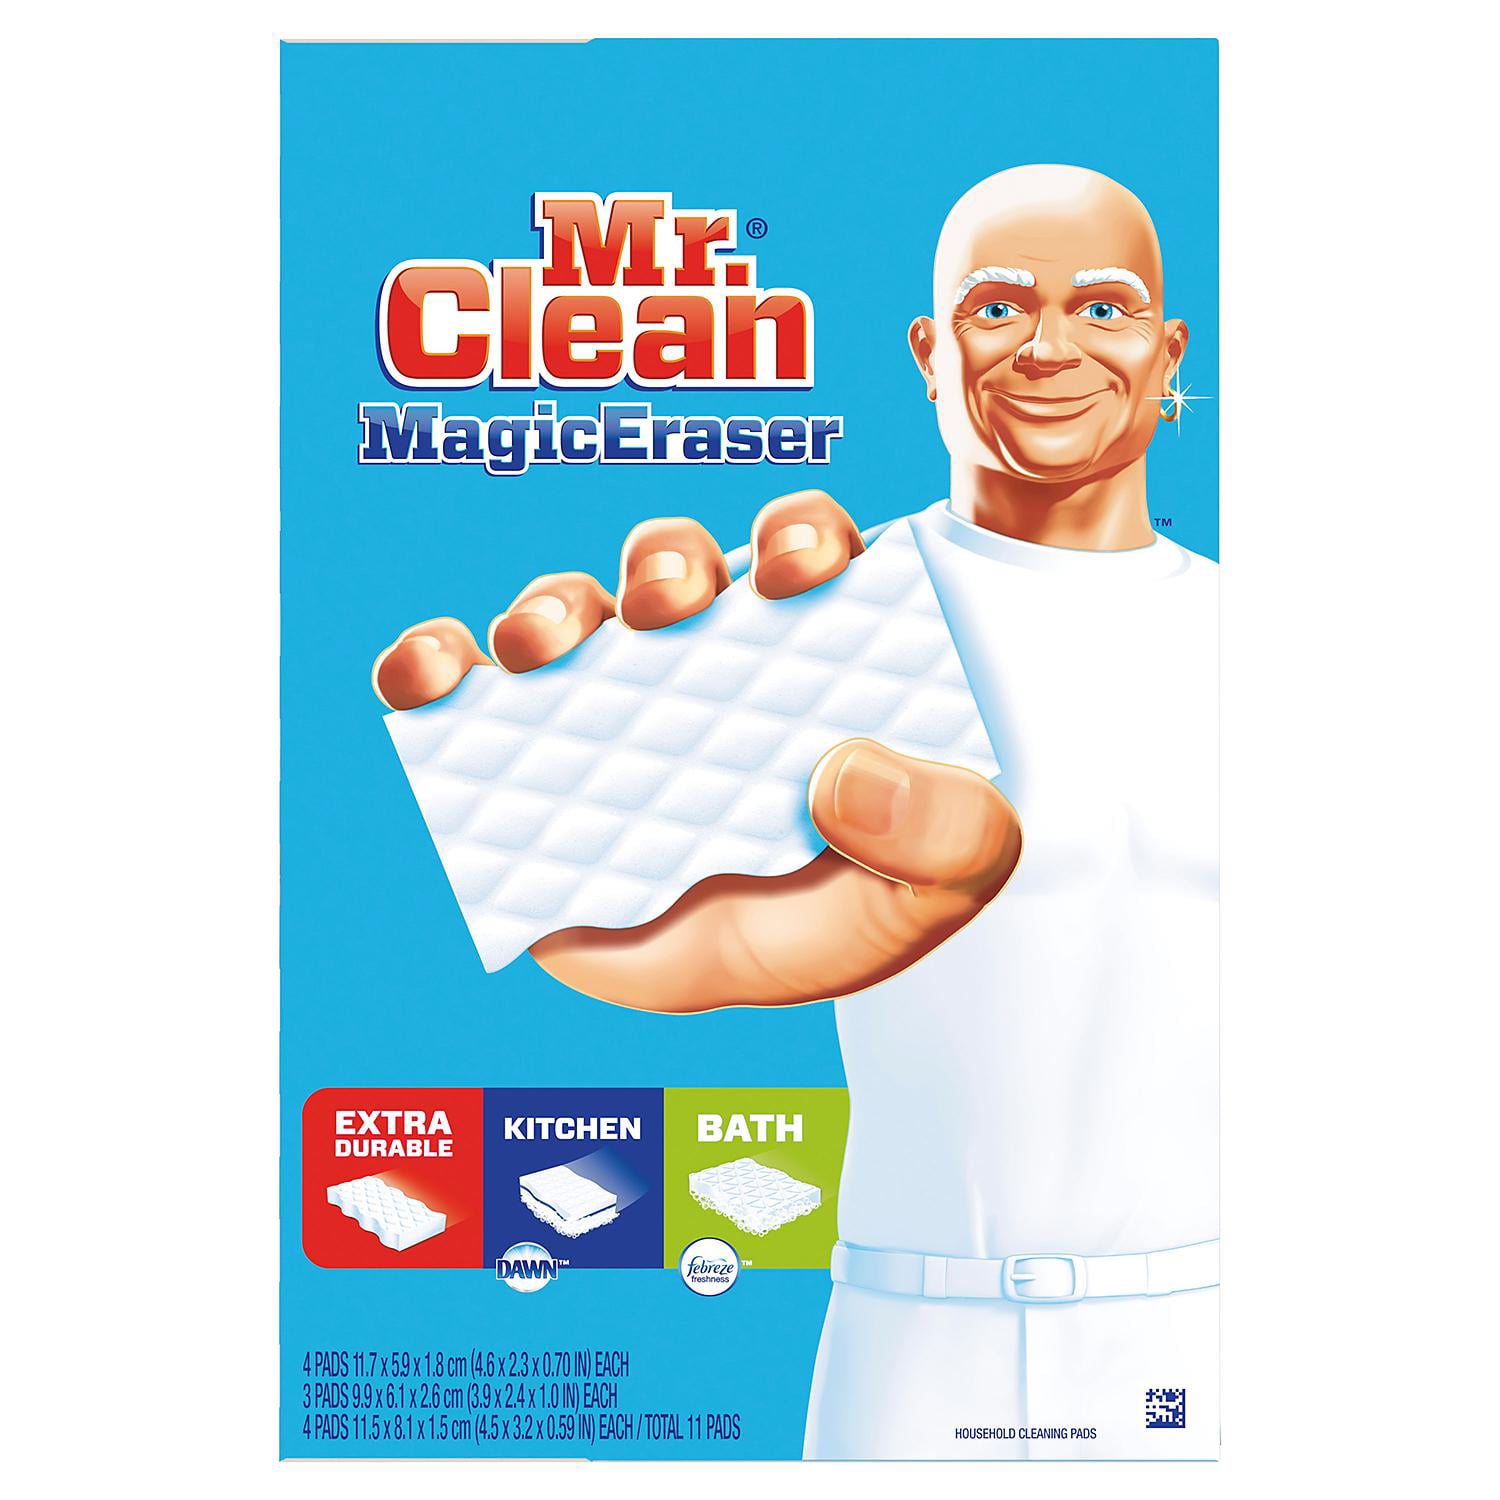 Bộ đa dạng bọt biển siêu tẩy xóa Magic Eraser của Mr Clean, được bán tại Walmart, là giải pháp hoàn hảo cho người tiêu dùng muốn có sản phẩm làm sạch chất lượng cao với giá cả hợp lý. Với gói 11 cây, bạn sẽ có đủ sản phẩm để làm sạch mọi vật dụng trong nhà.